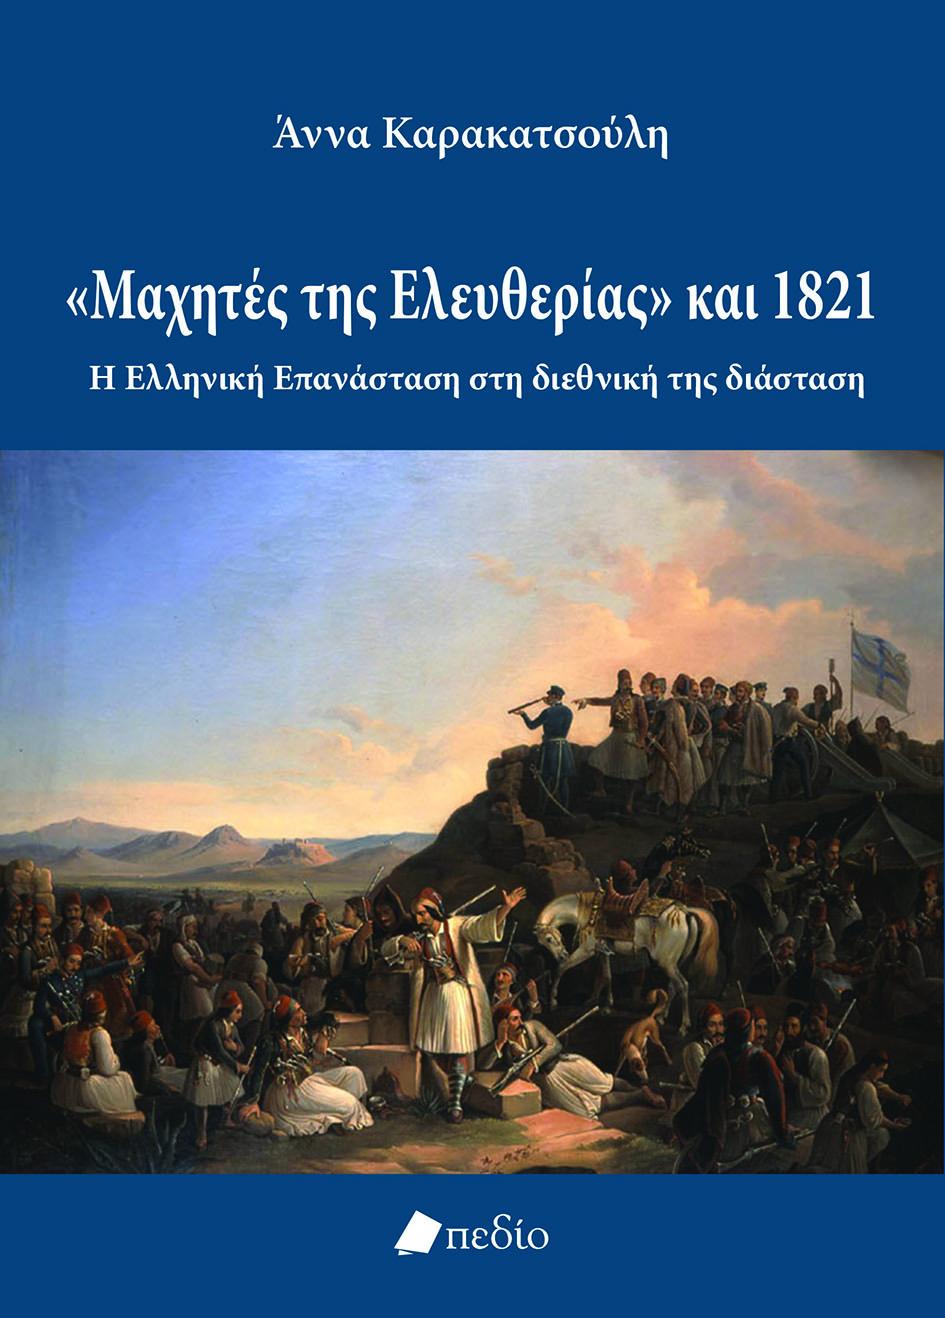 «Μαχητές της Ελευθερίας» και 1821: Η Ελληνική Επανάσταση στη διεθνική της διάσταση